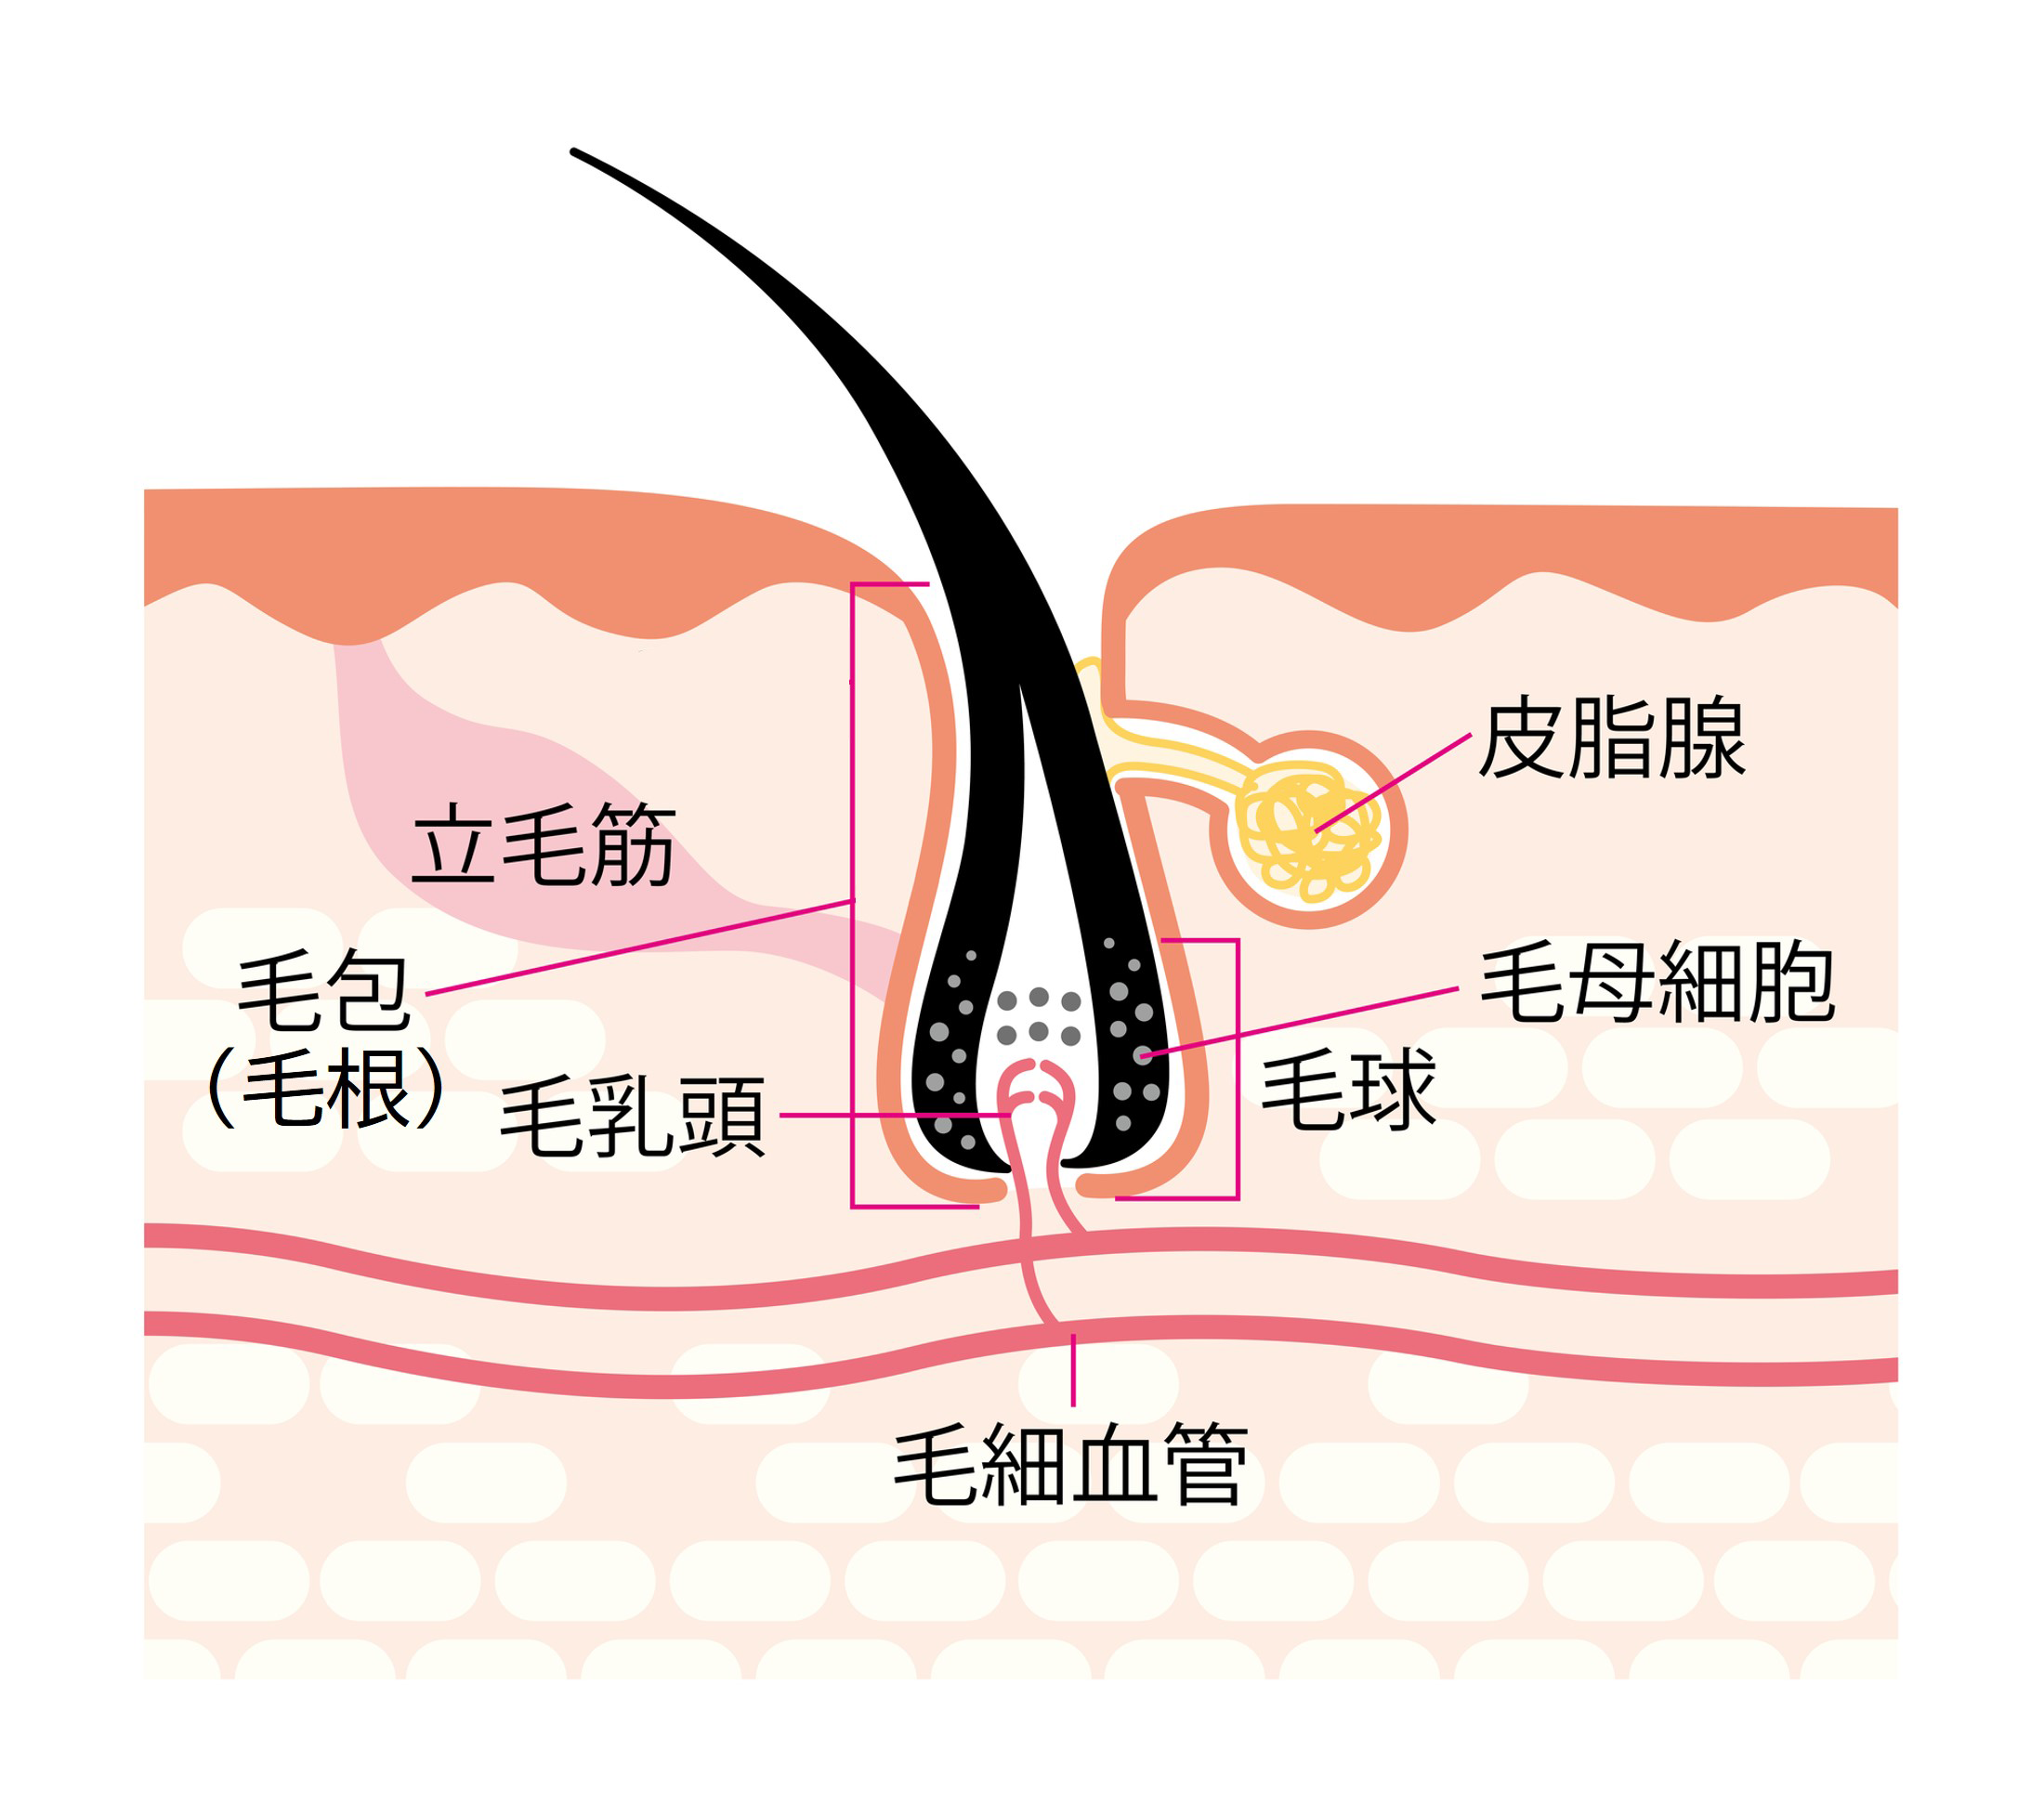 髪と頭皮の構造：頭皮の血流をよくすれば、健康な髪が育つ